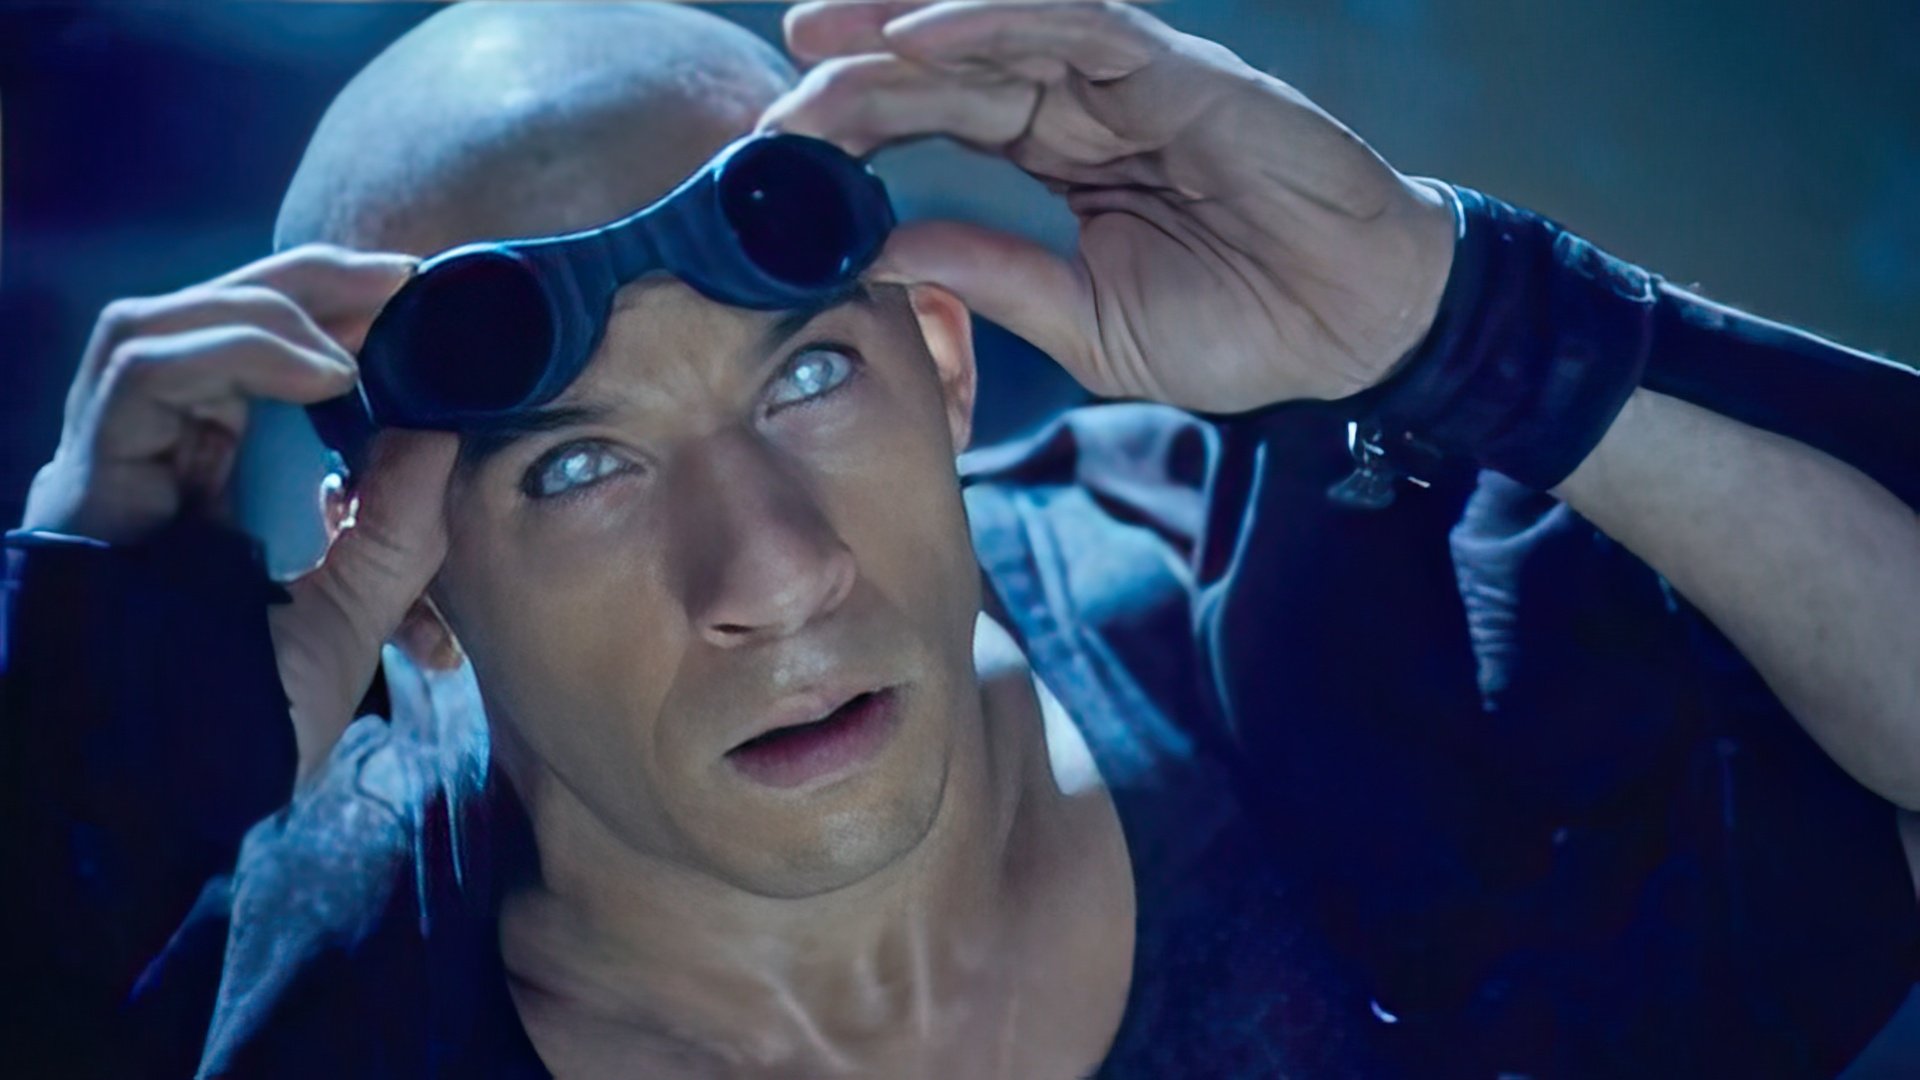 The famous Riddick’s eye, Vin Diesel wore phosphorescent lenses